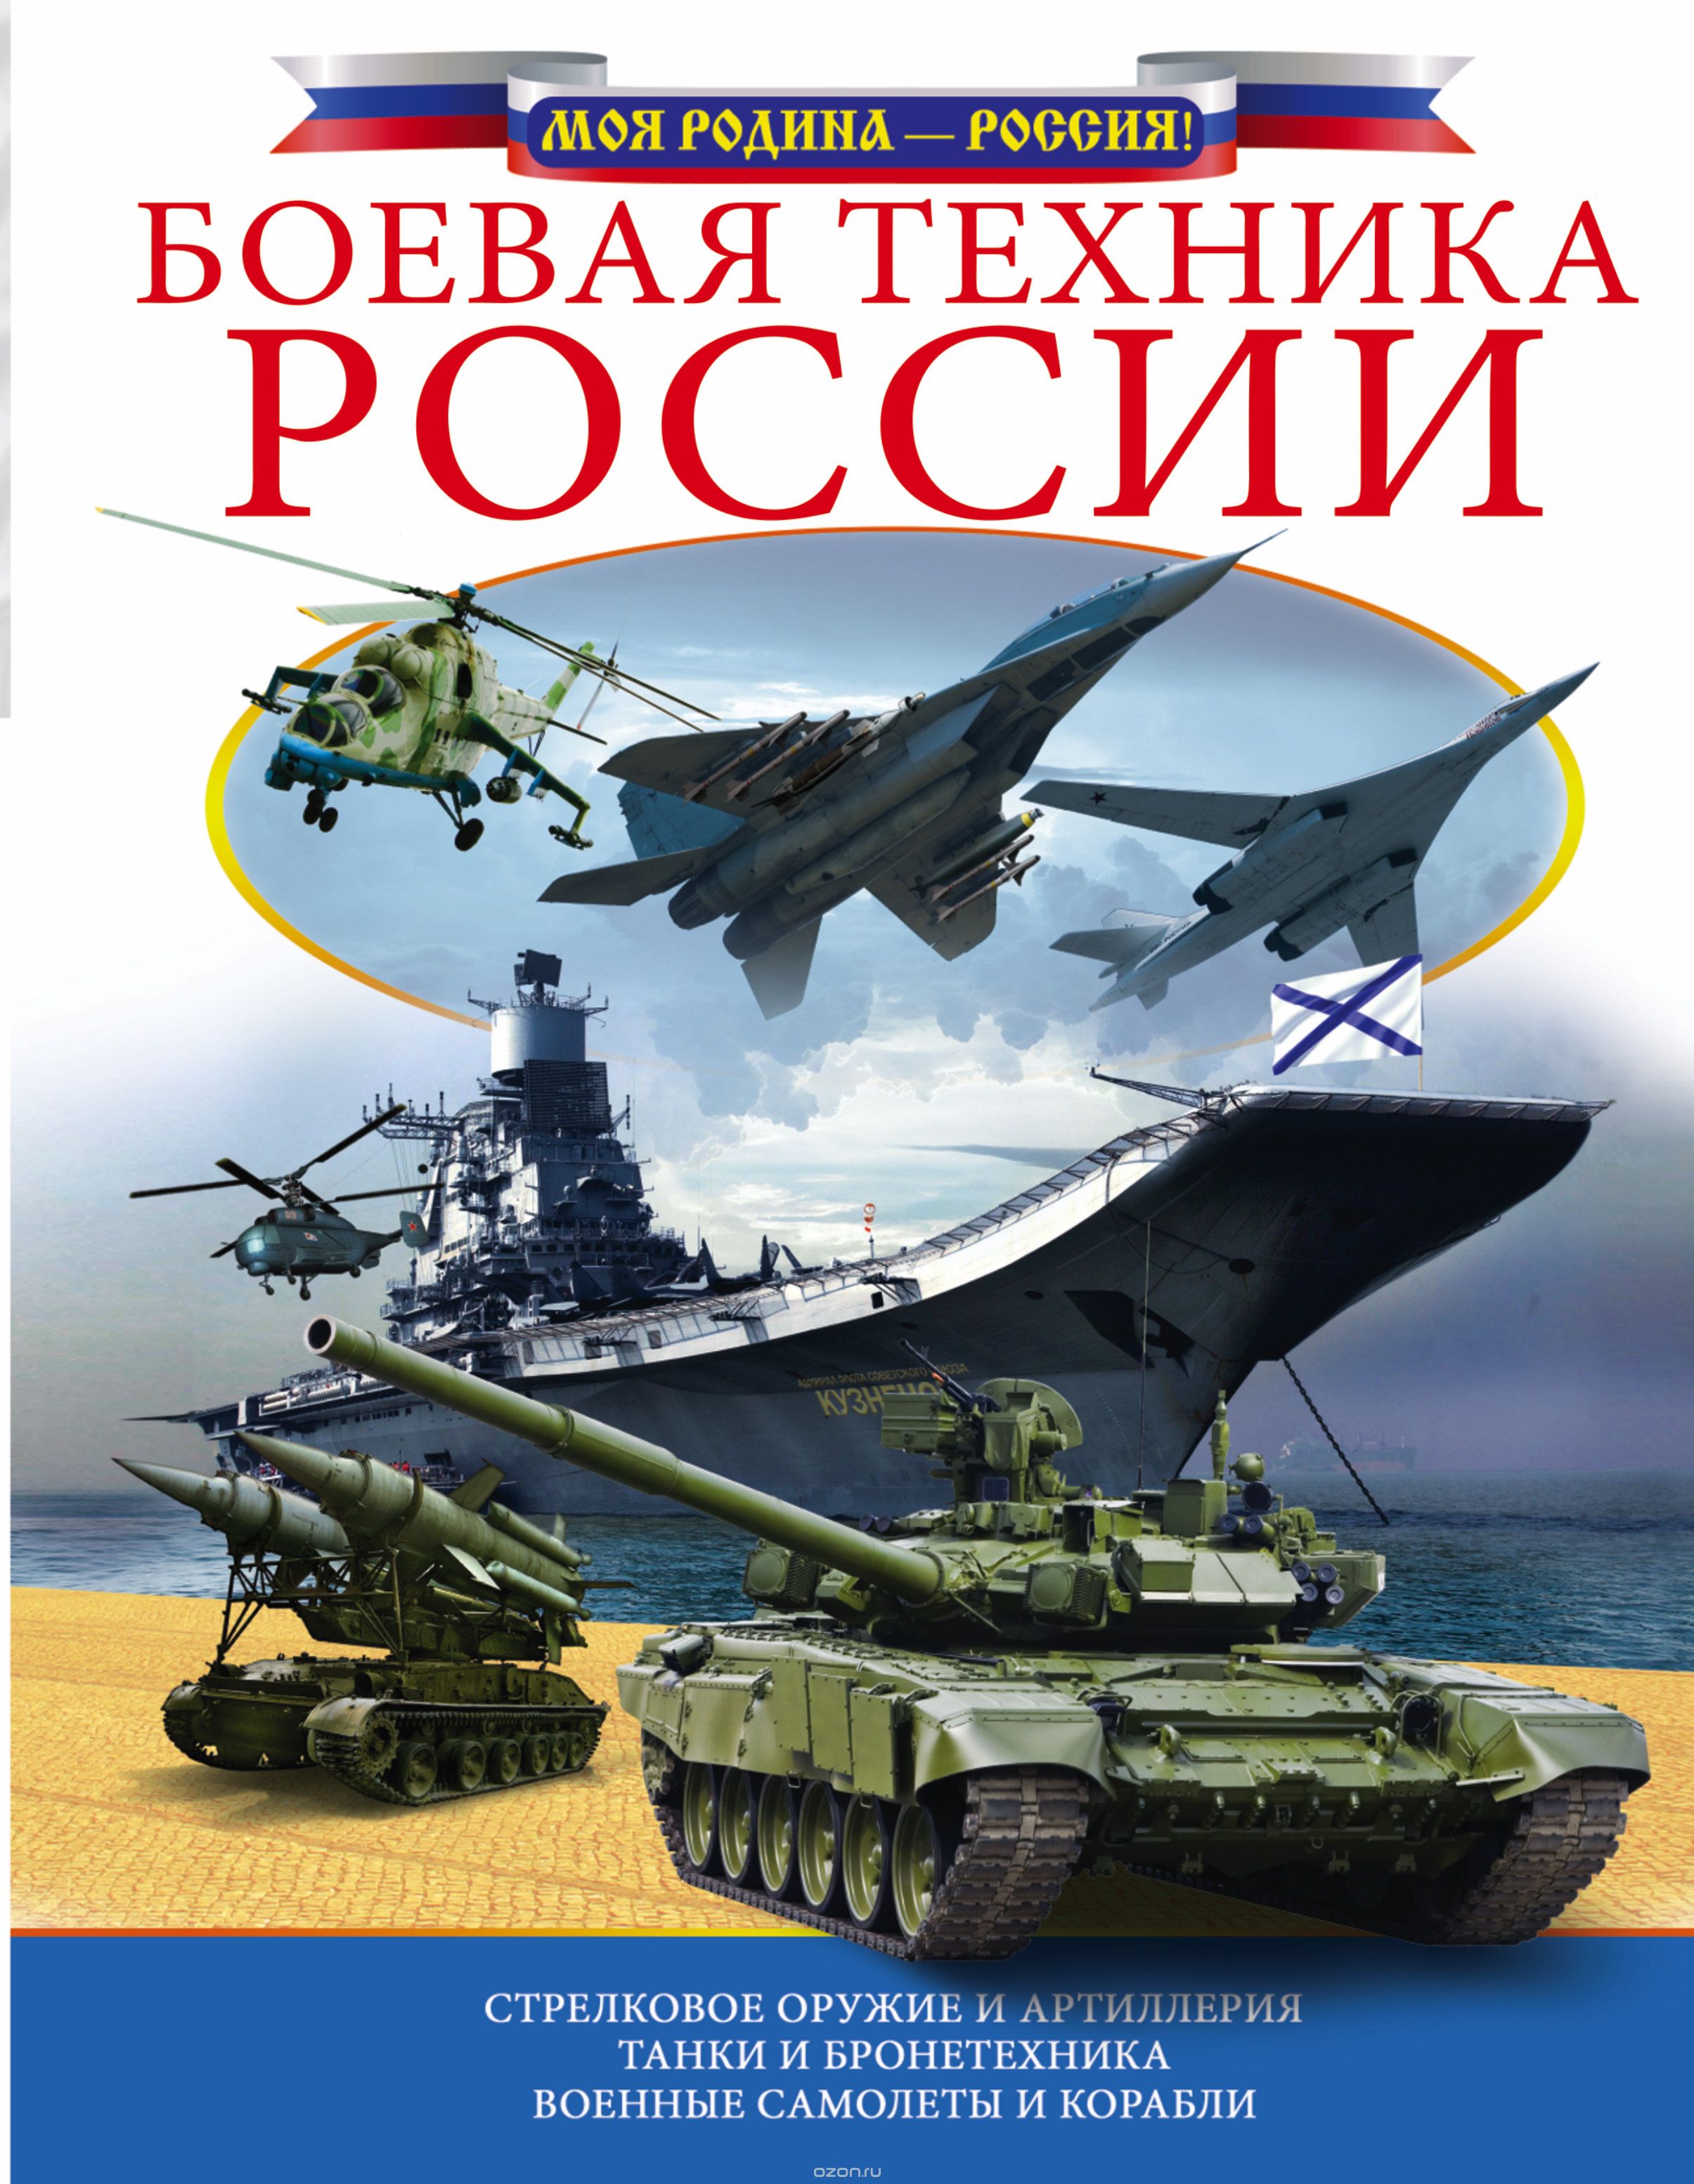 Скачать книгу "Боевая техника России"